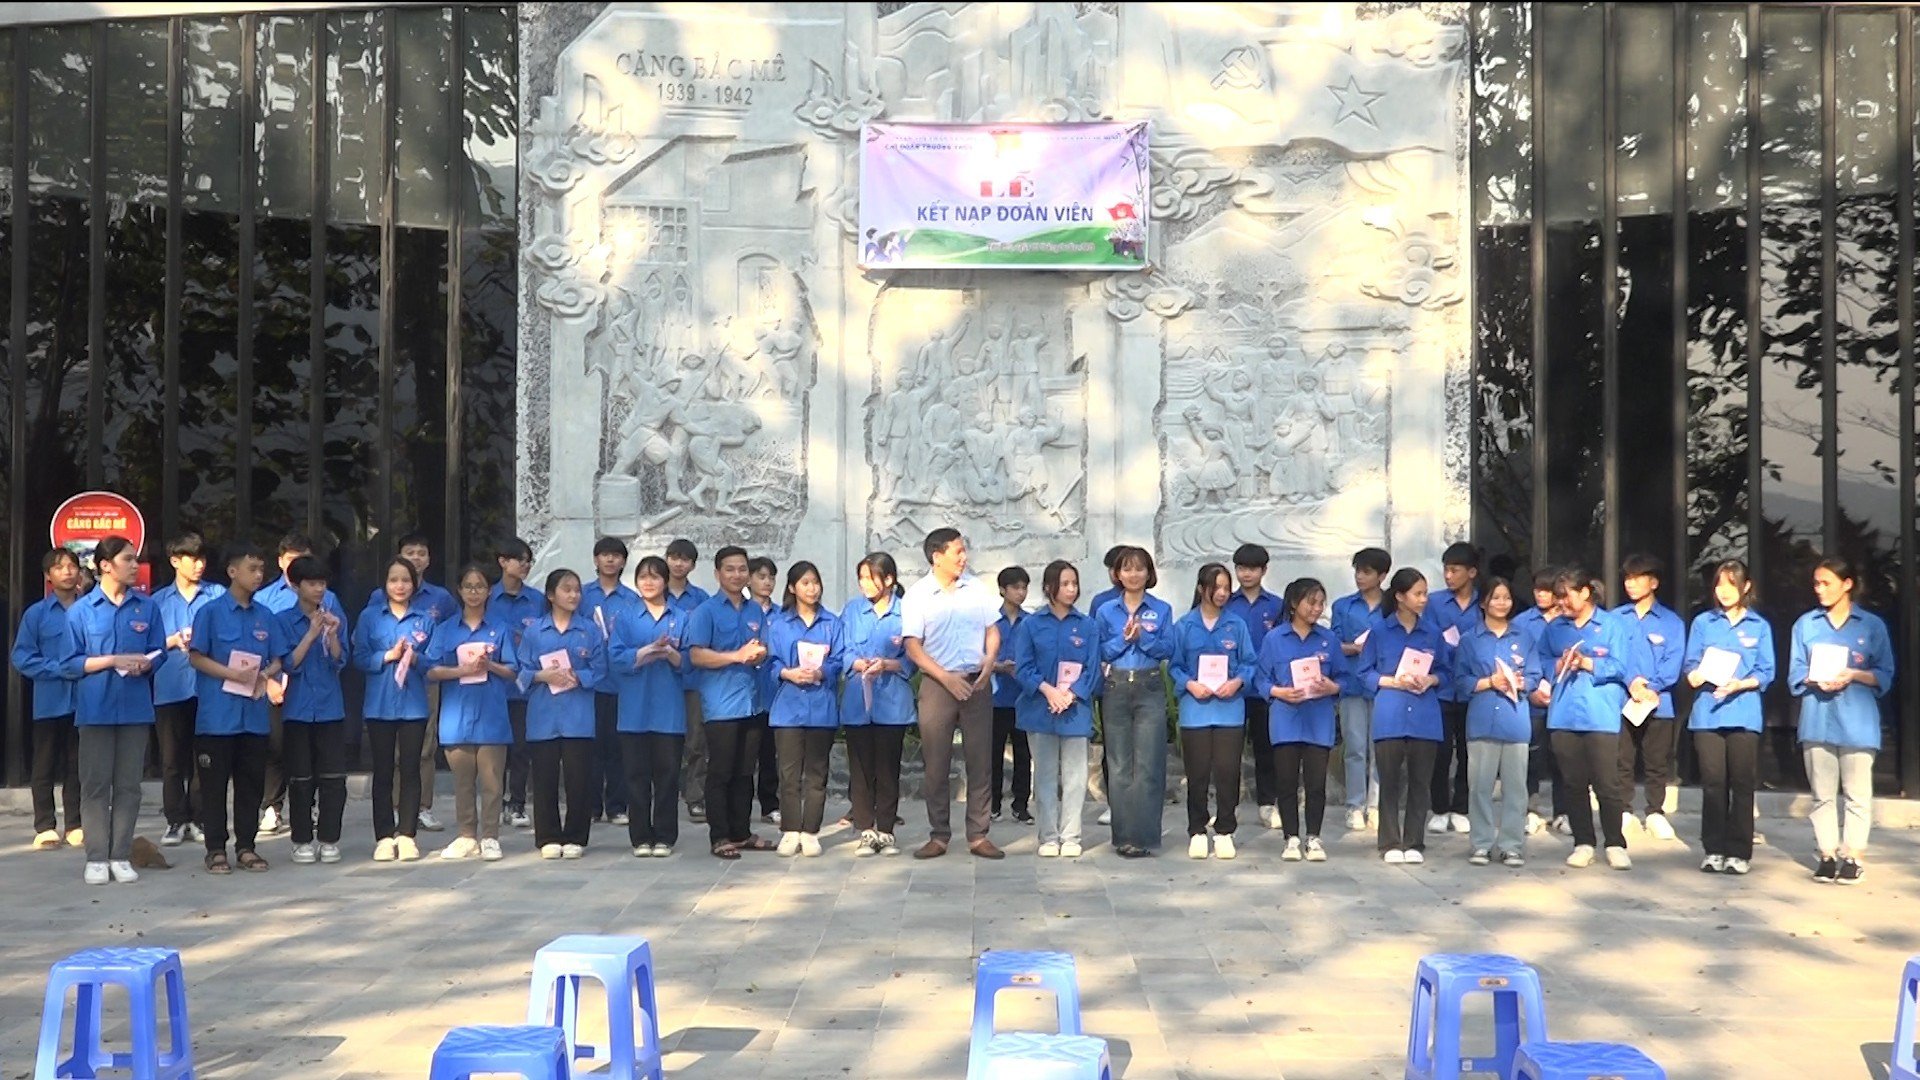 Đoàn Trường Trung học cơ sở Yên Phú tổ chức lễ kết nạp đoàn viên mới